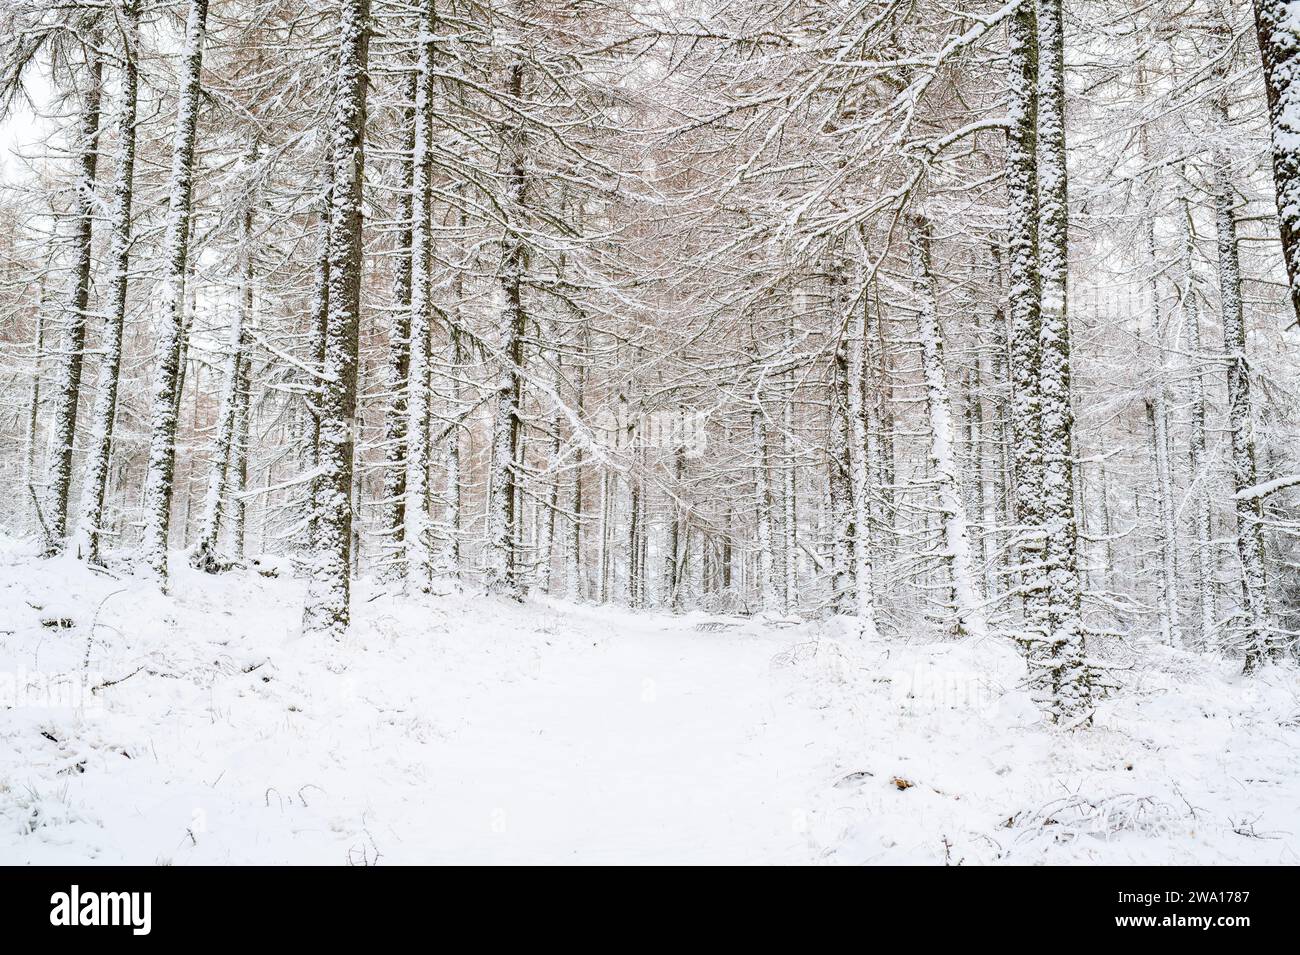 Piste boisée à travers les mélèzes dans la neige. Huntley, Aberdeenshire, Écosse Banque D'Images